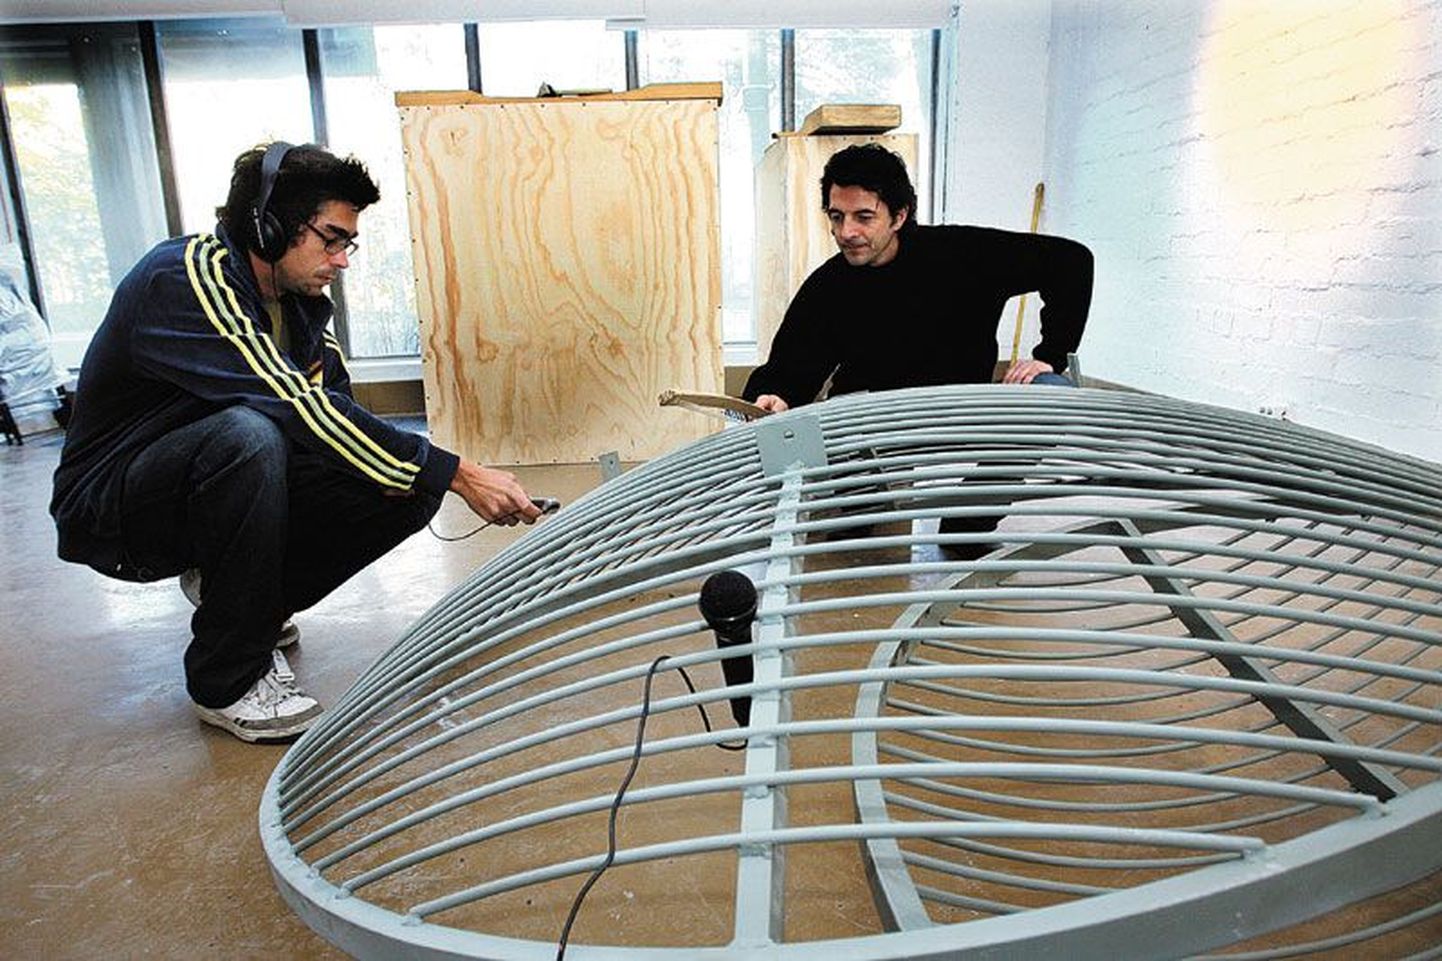 Välismaalt on projekti osalema kutsutud             kümmekond artisti, multimeediaartist Renzo van Steenbergen (vasakul) ja skulptor Lukas Kühne hiiglasliku ksülofoni juures, mida Kühne projekti tarvis ehitab.